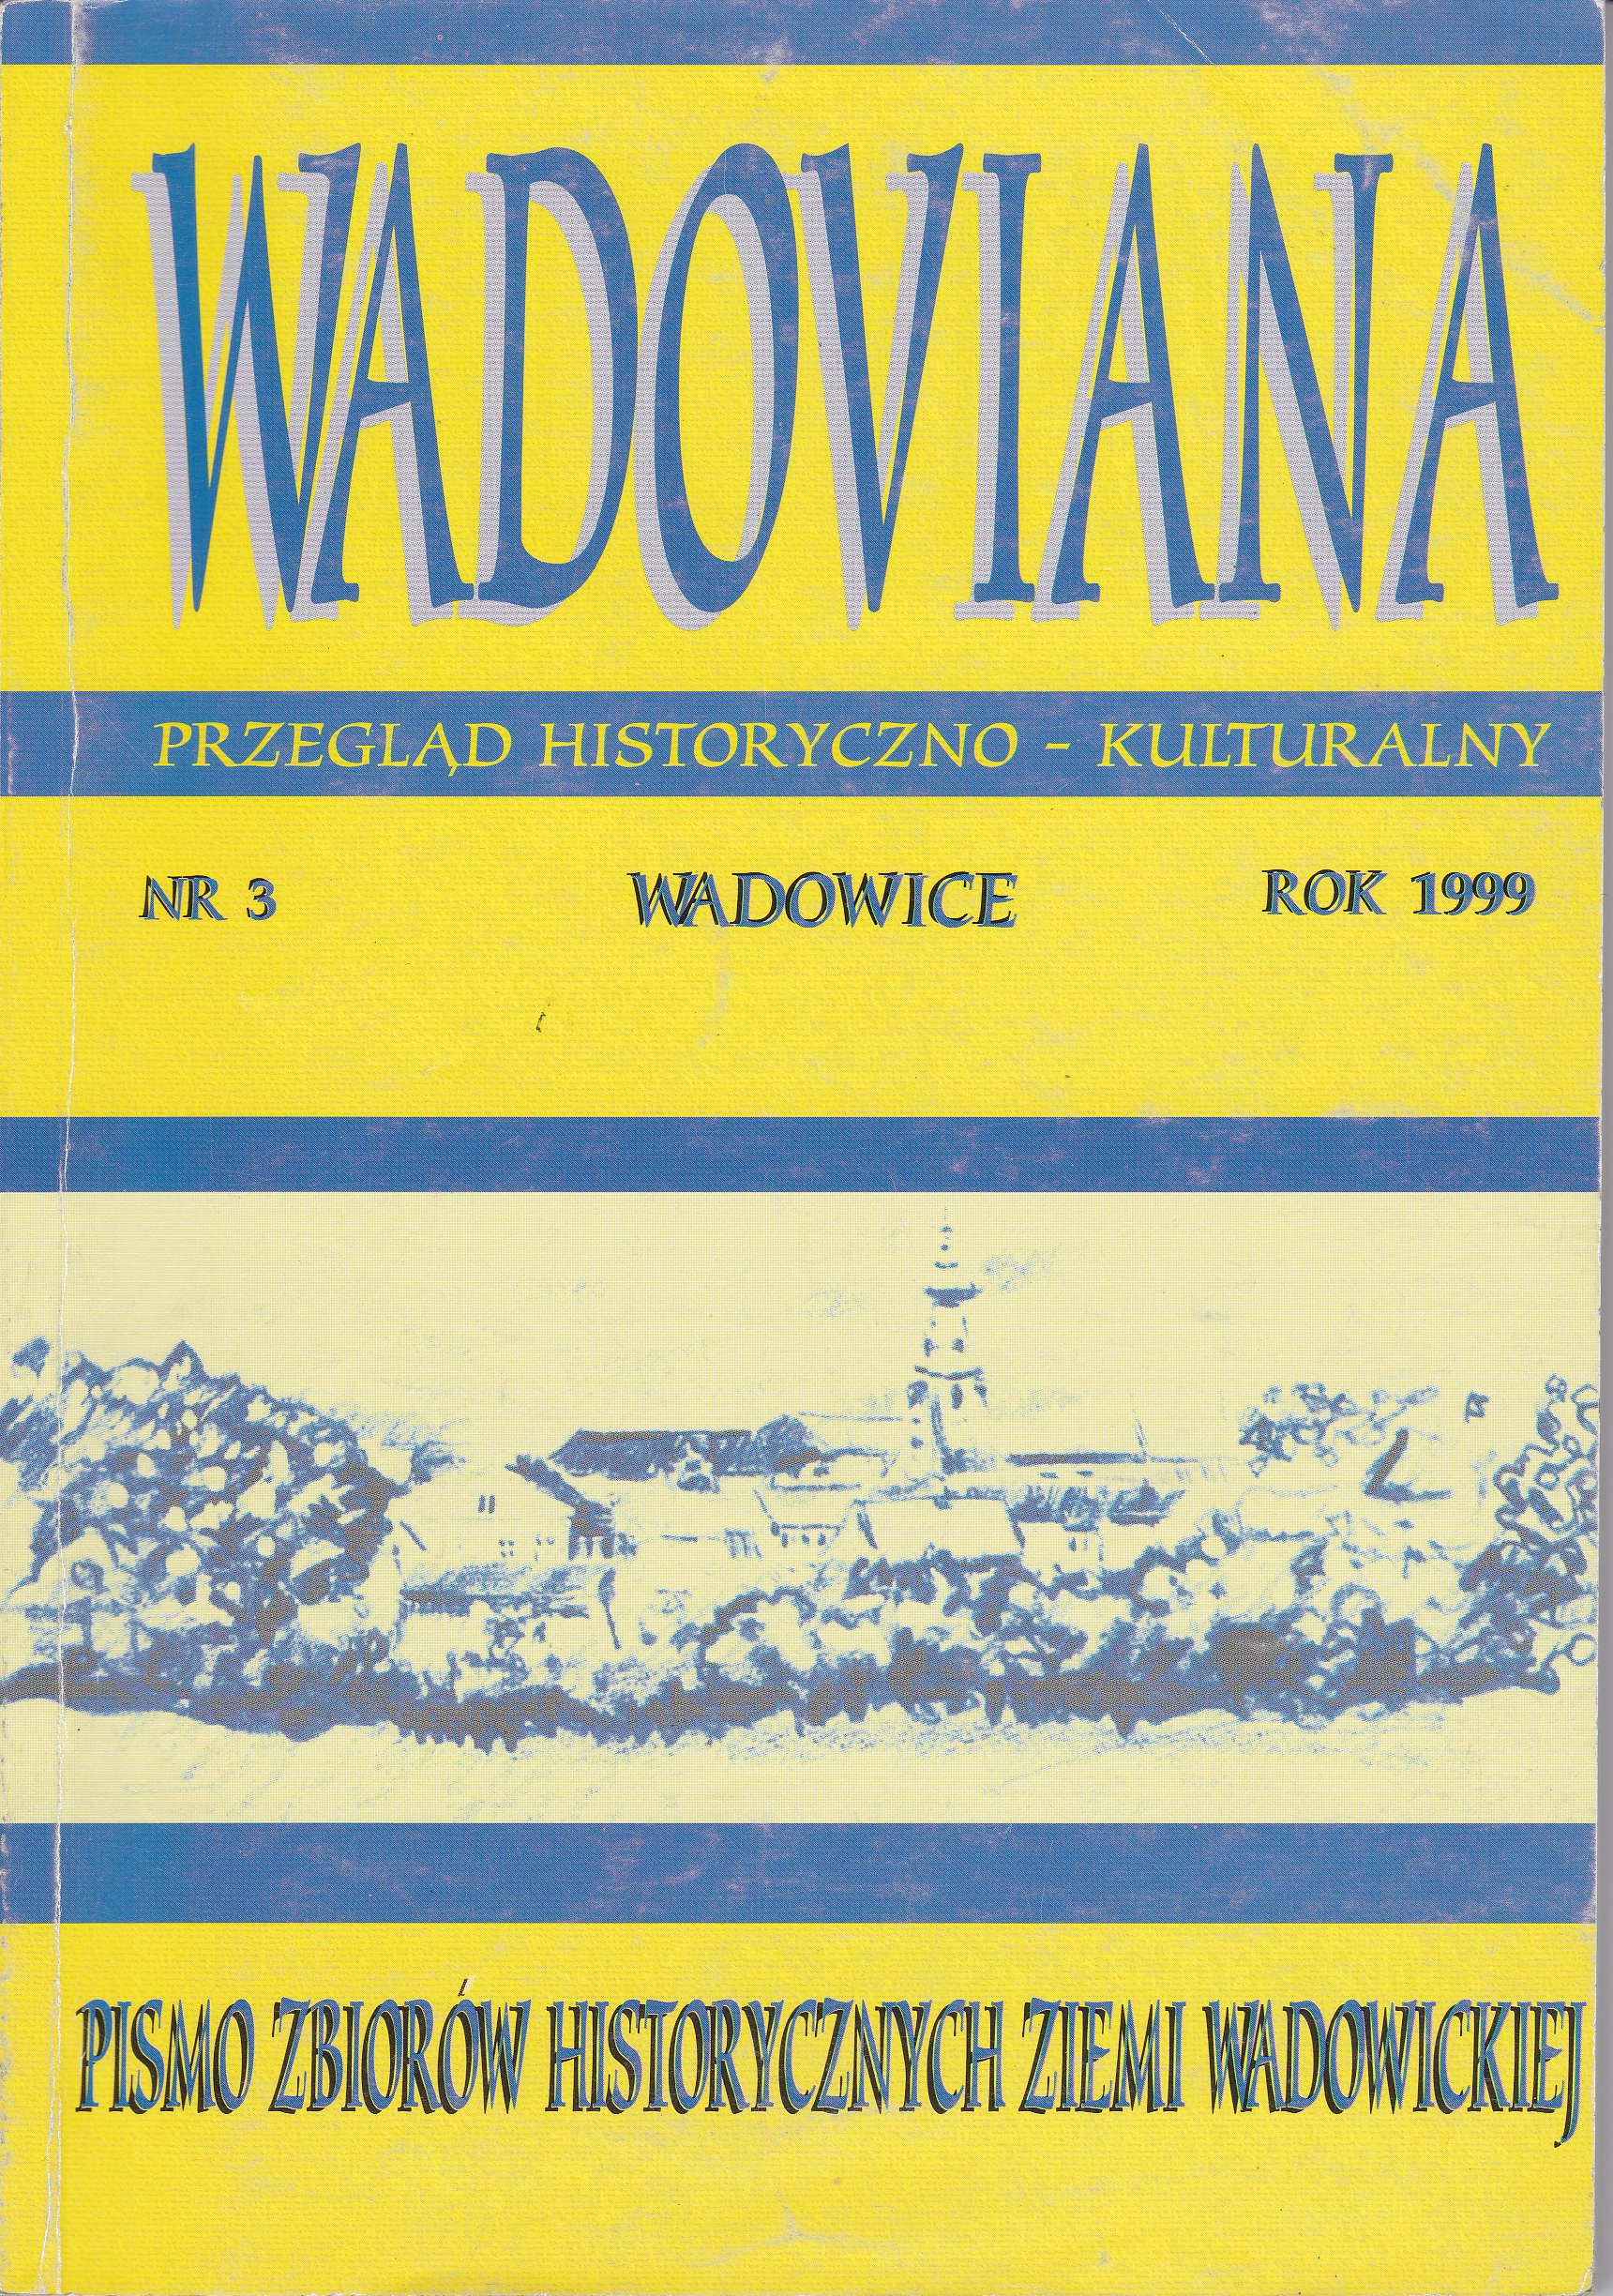 Drzwi ozwierać ślebodzie - silhouette of a resident of Wadowice, Władysław Zbigniew Balon Cover Image